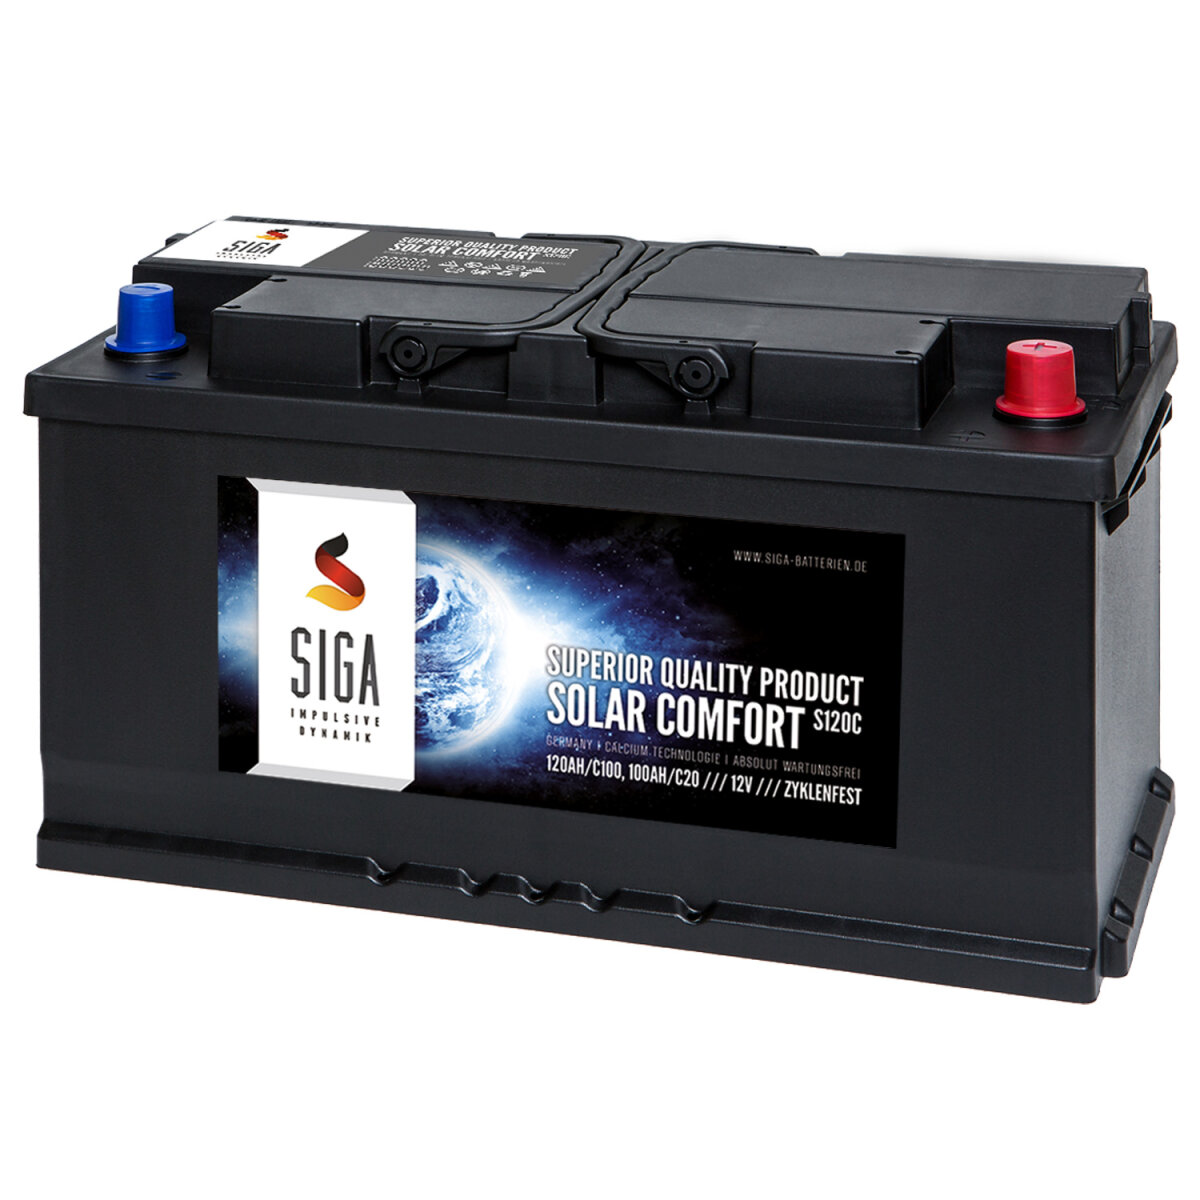 SIGA Solar Comfort Solarbatterie 120Ah 12V, 131,90 €